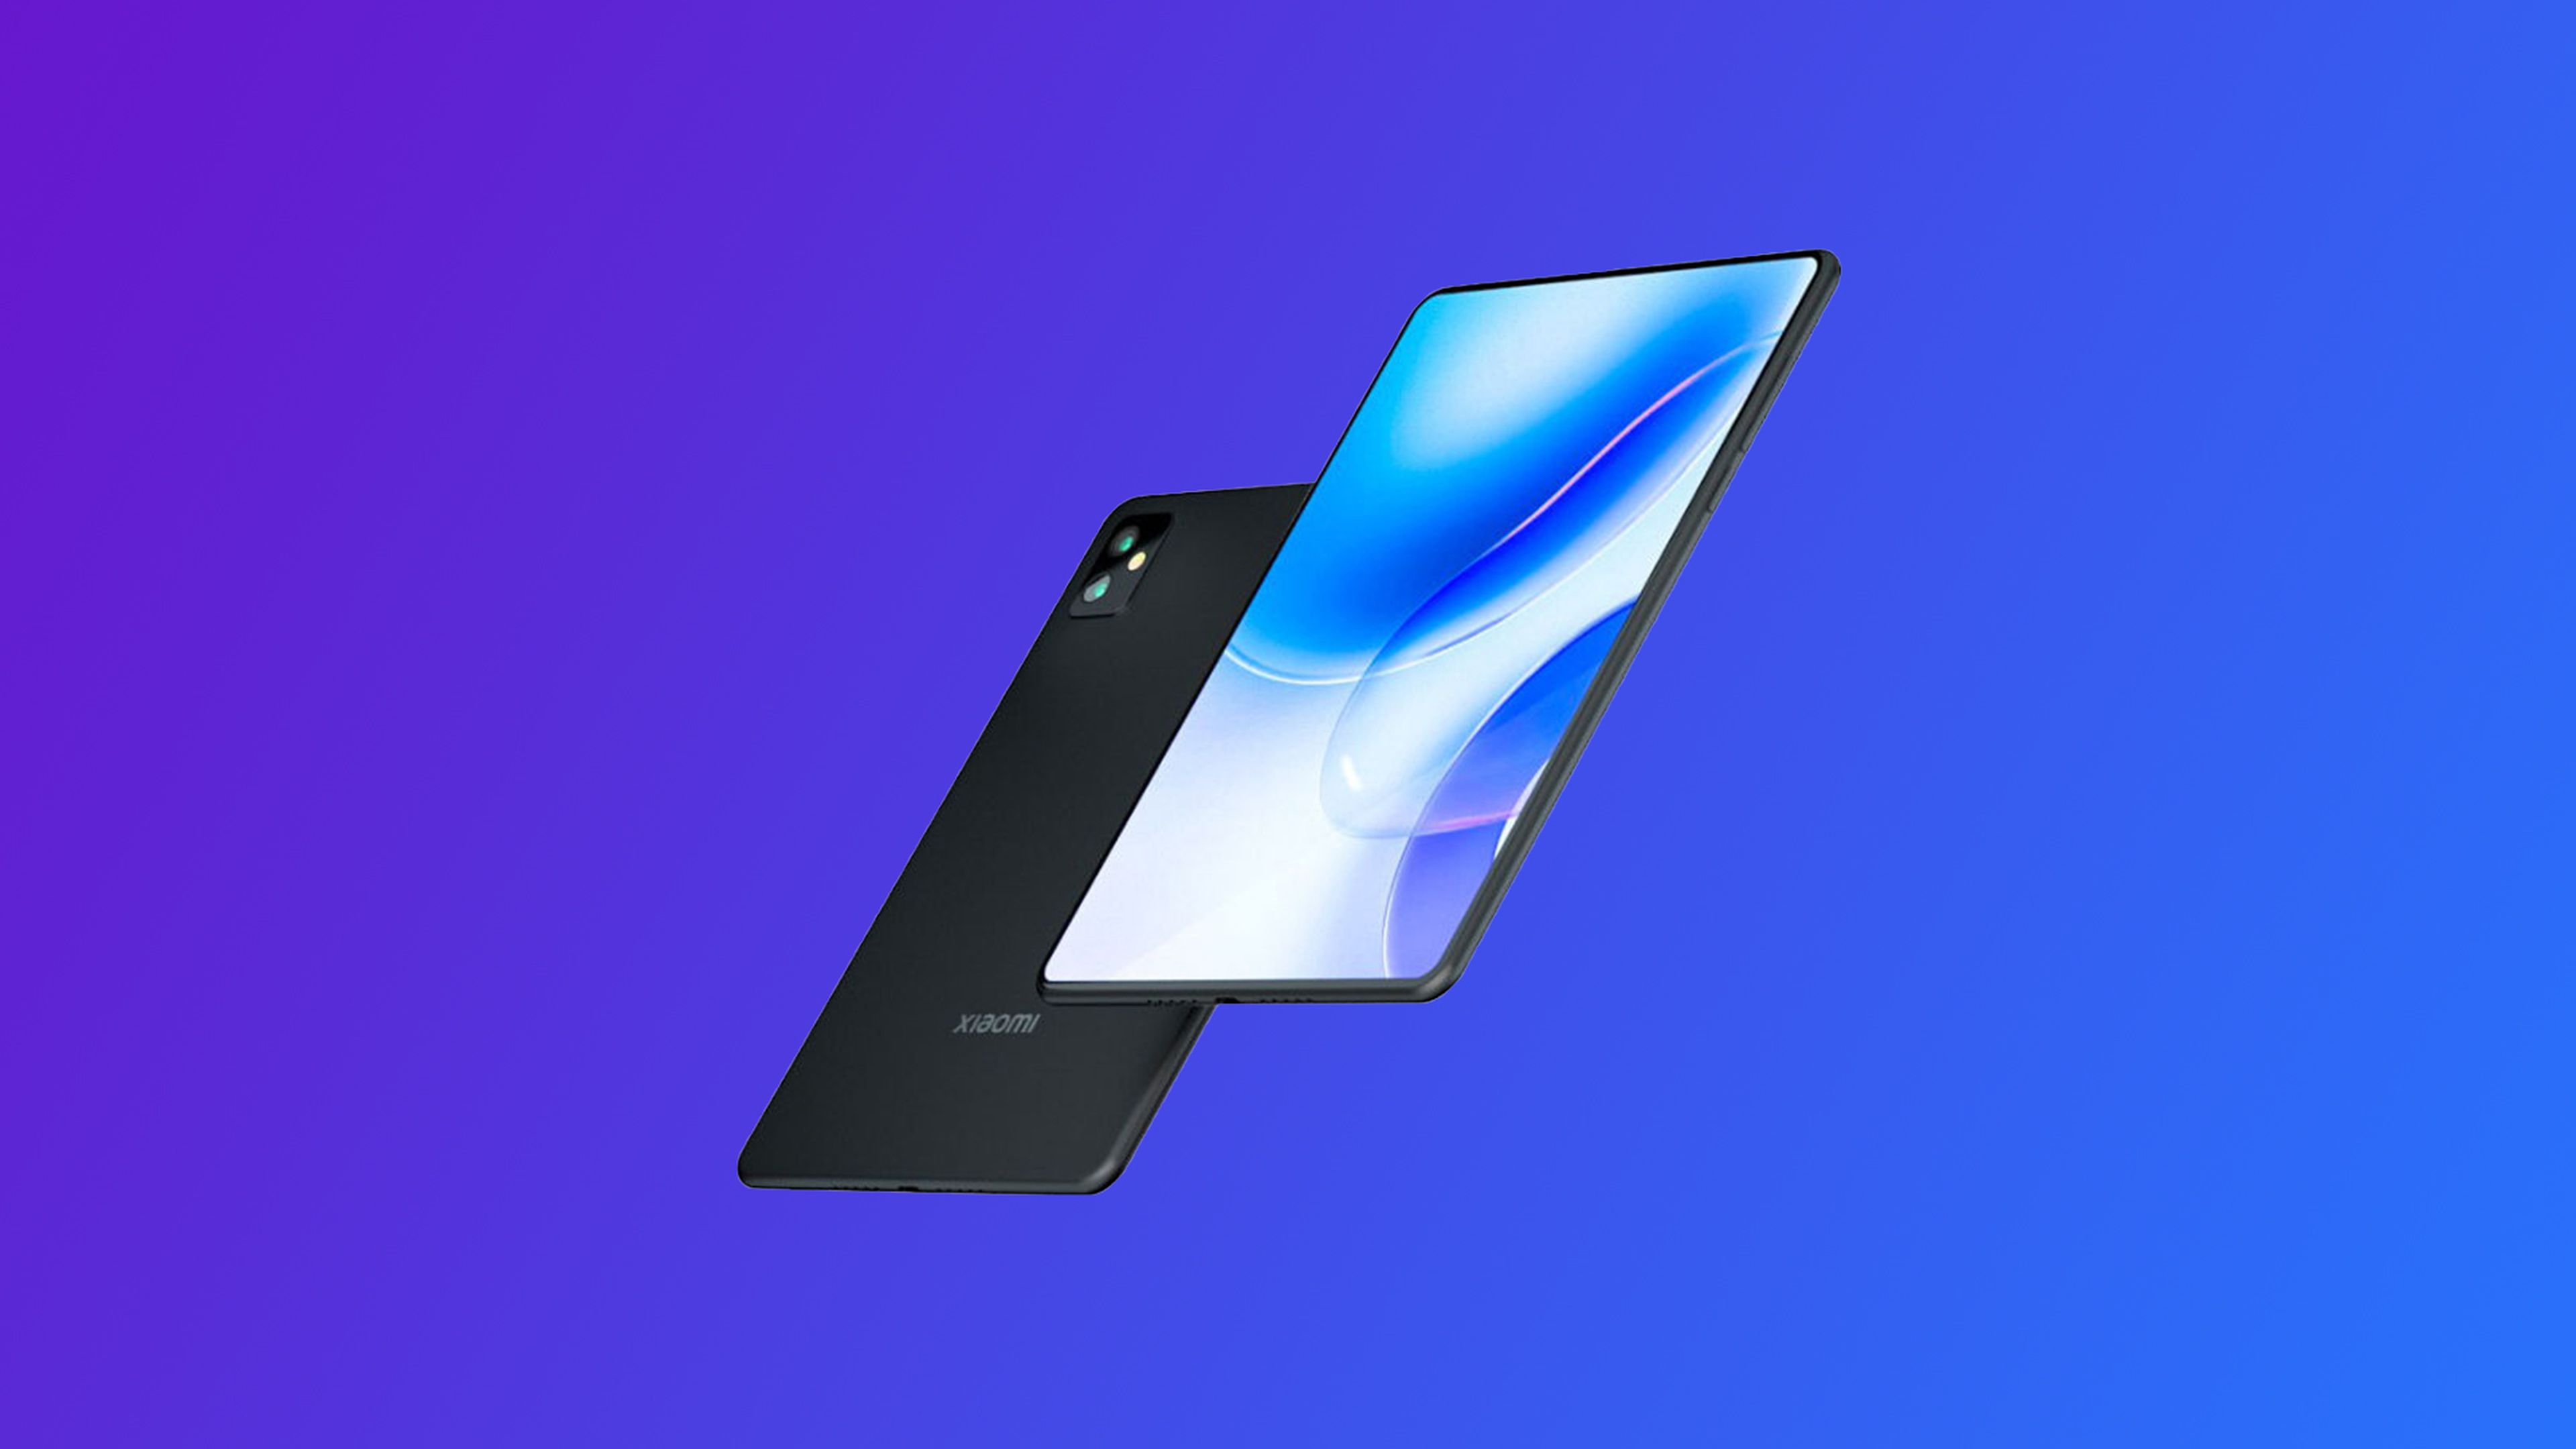 Xiaomi Pad 5 Pro 5G - Características y especificaciones